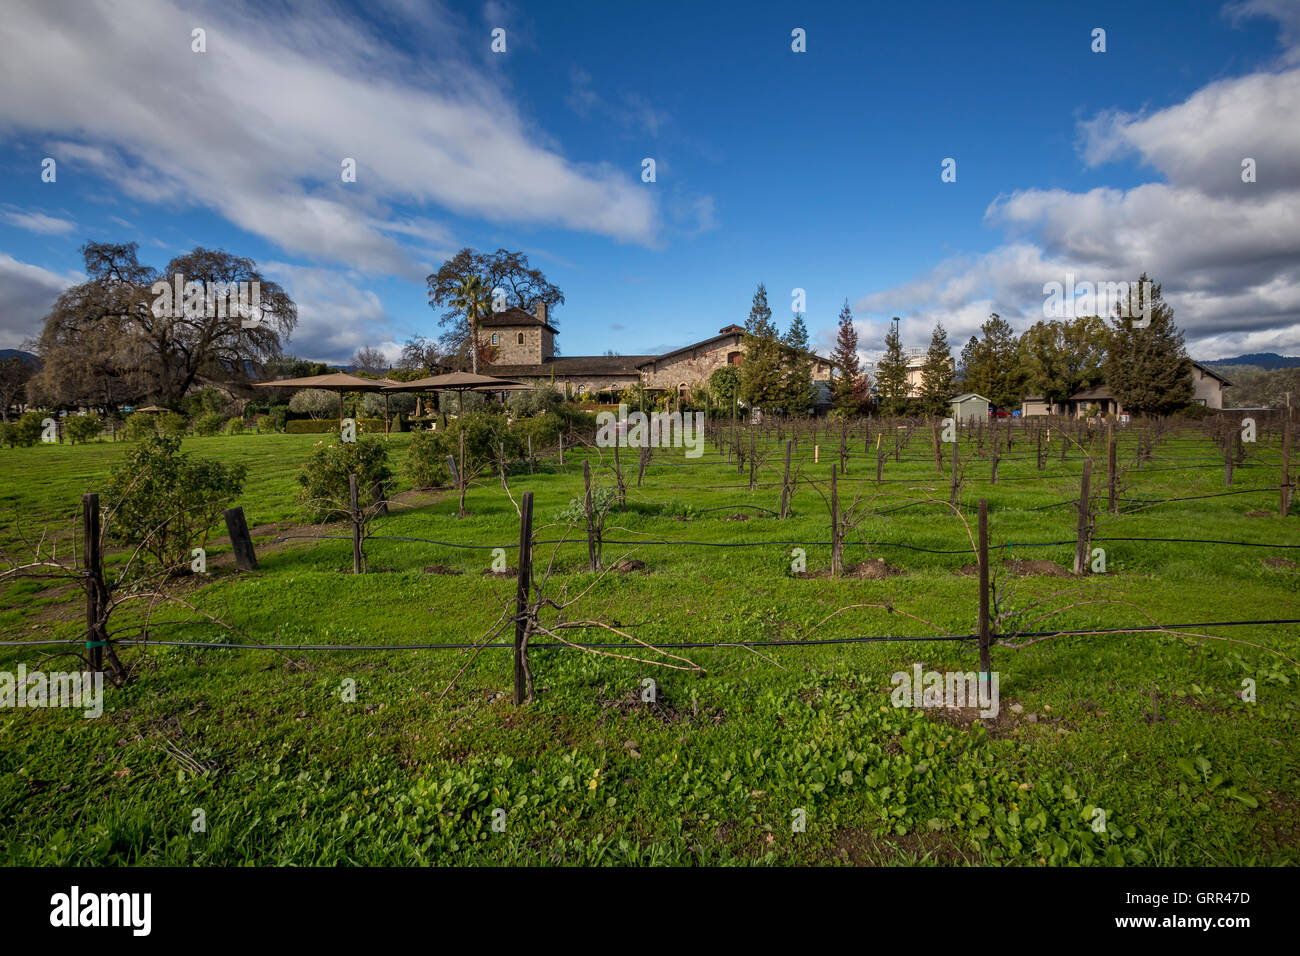 Vignoble du domaine, V Sattui Winery, Napa Valley, Comté de Napa, Californie, Etats-Unis, Amérique du Nord Banque D'Images